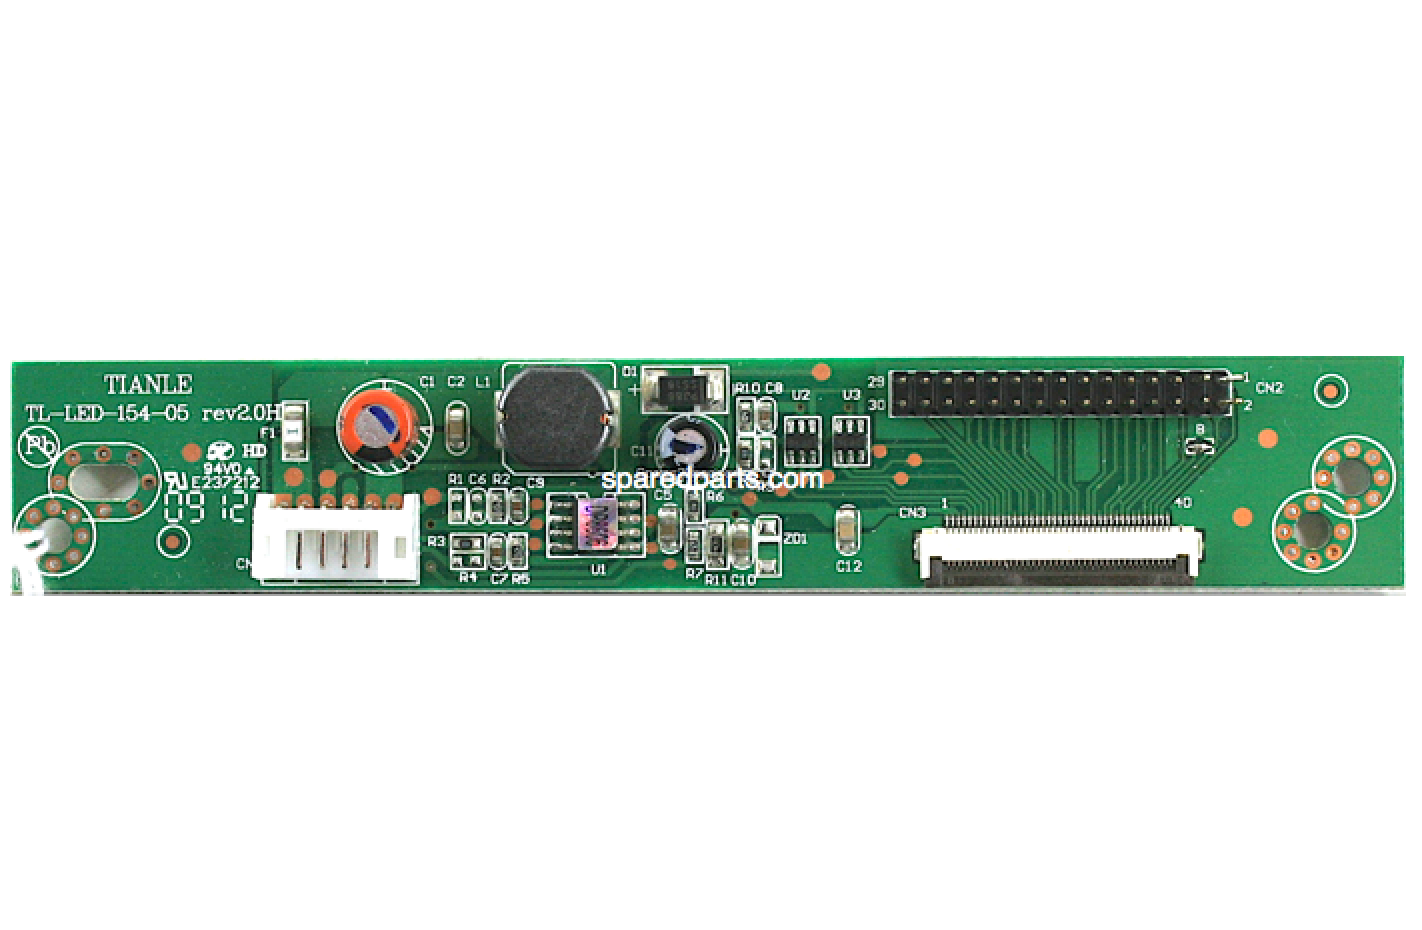 TIANLE Inverter PCB TL-LED-154-05